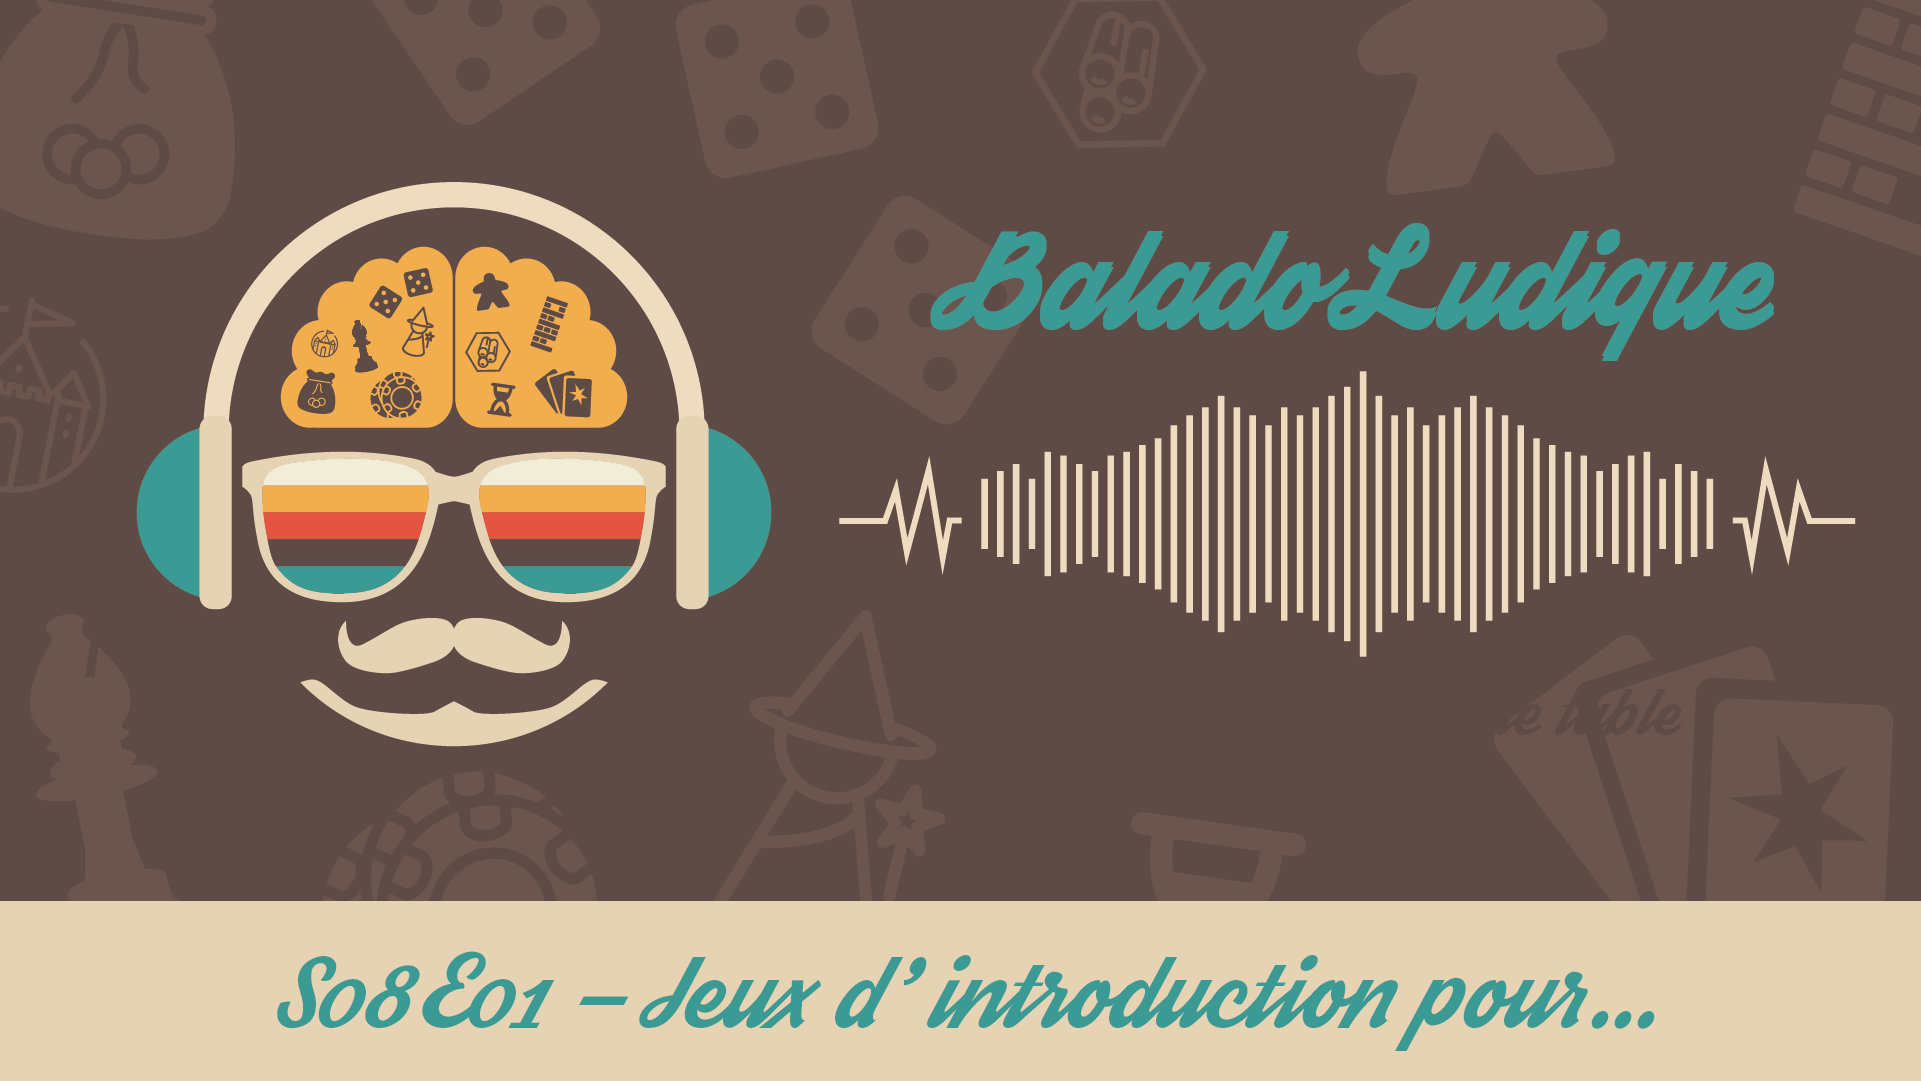 Jeux d'introduction pour... - BaladoLudique - s08-e01